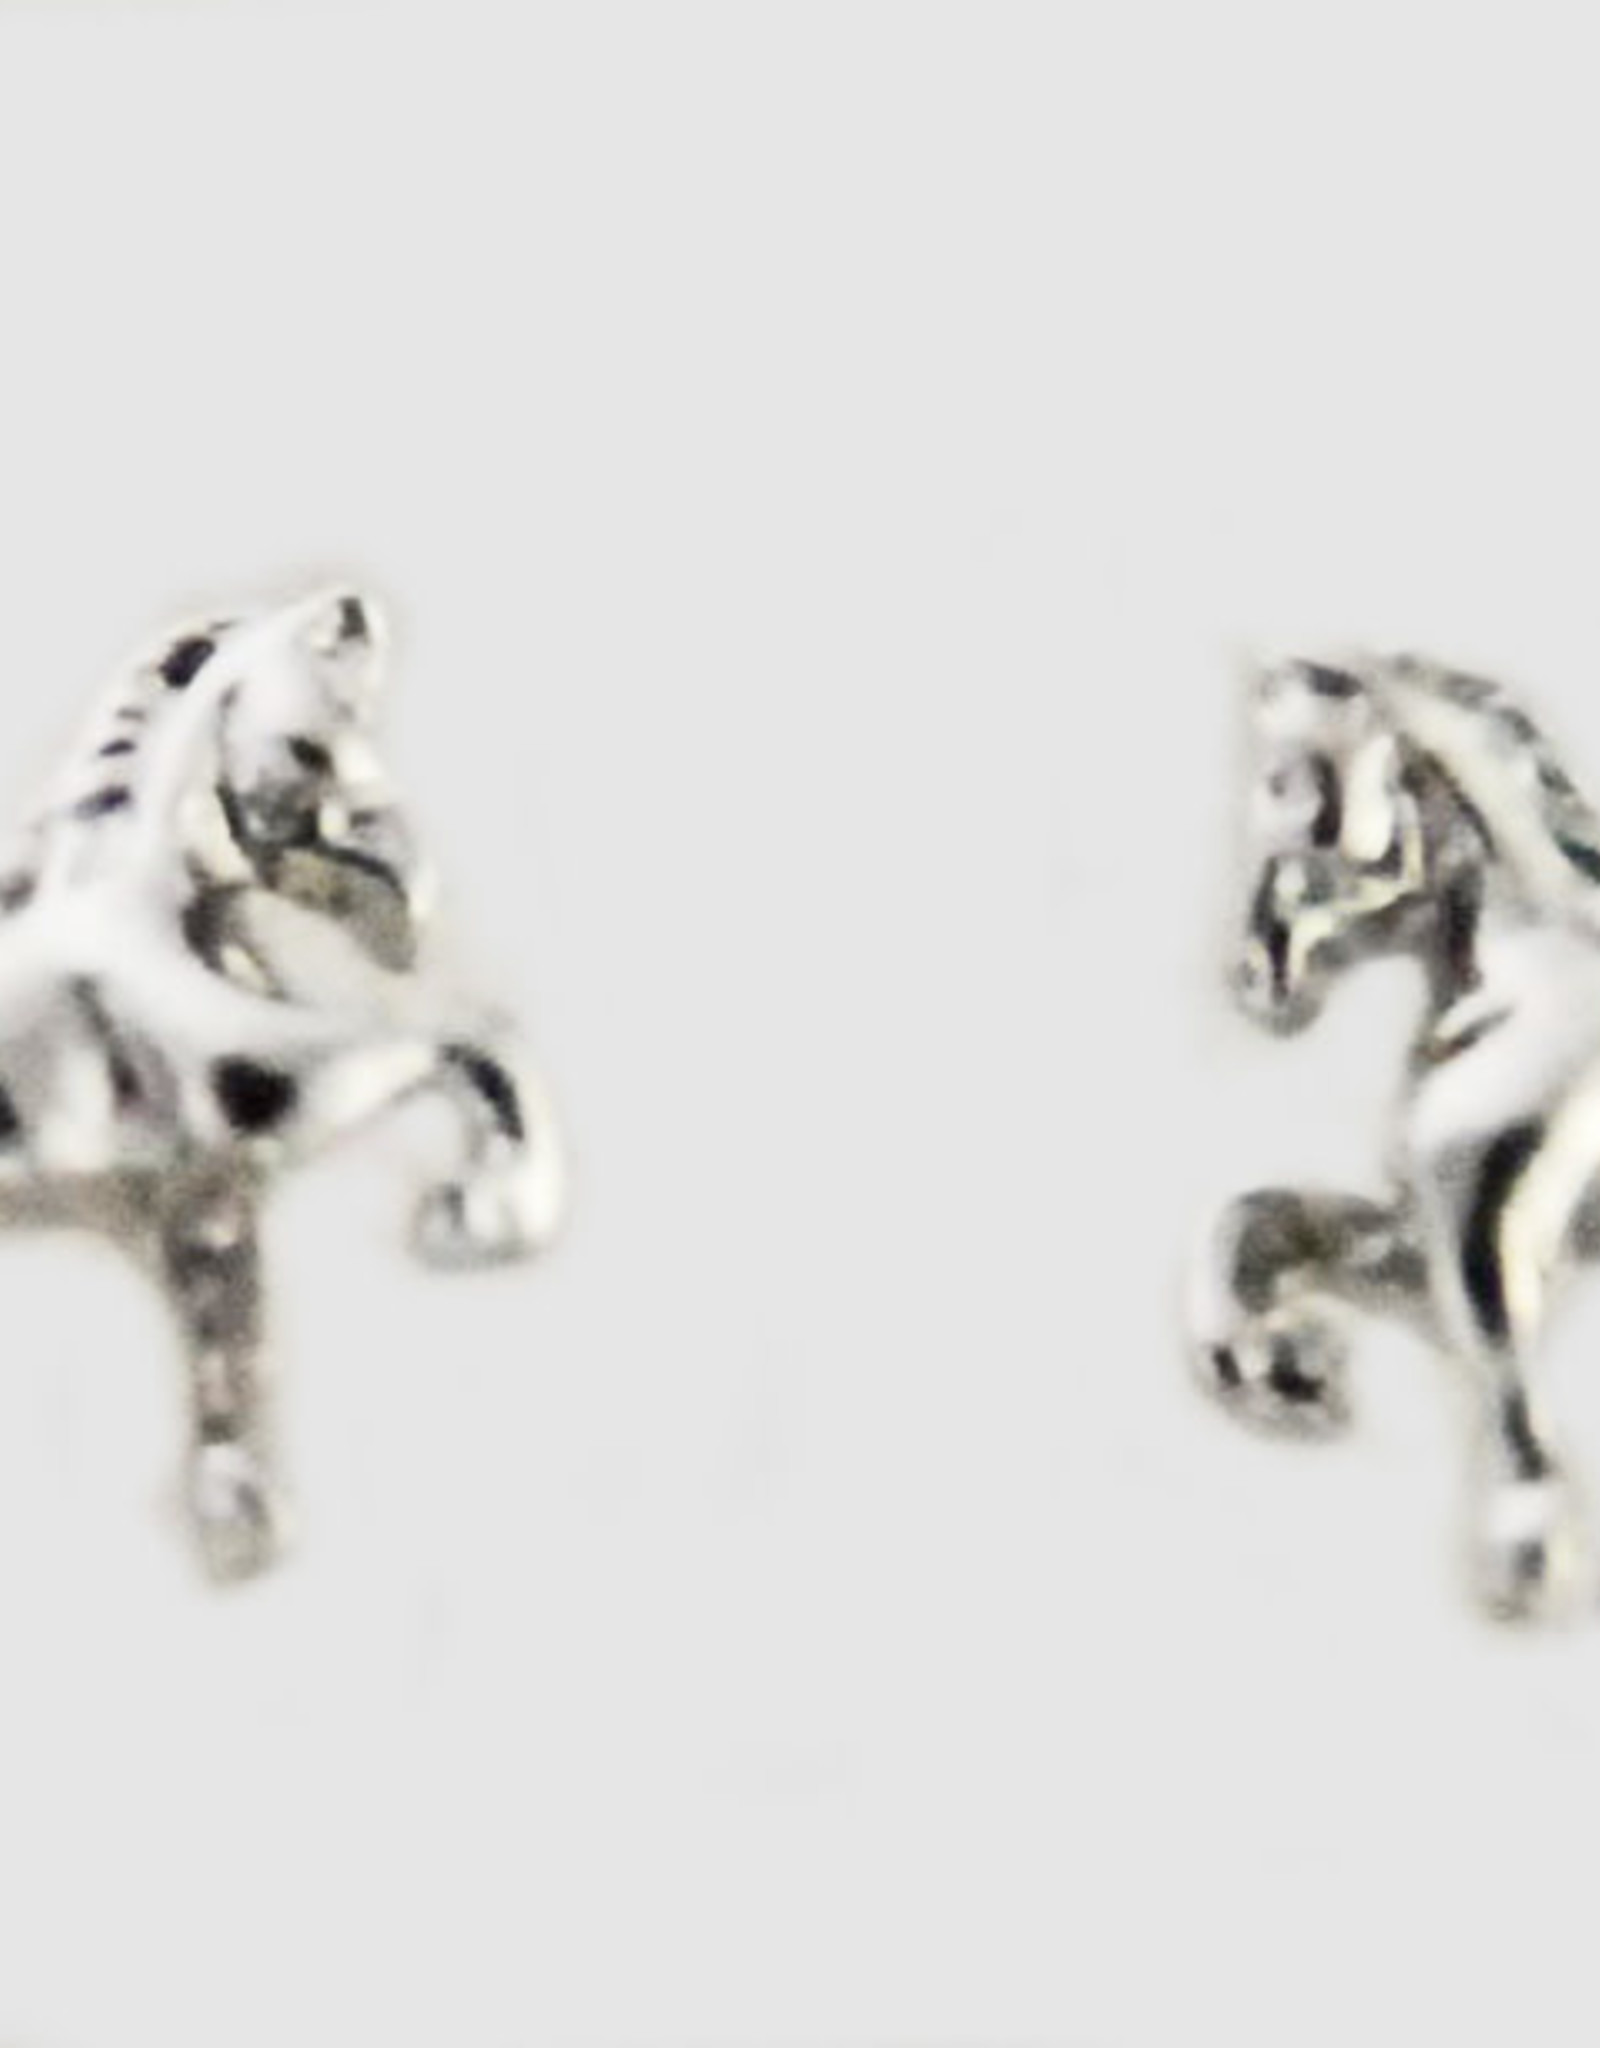 Saddlebred 3D earrings-IMITATION silver